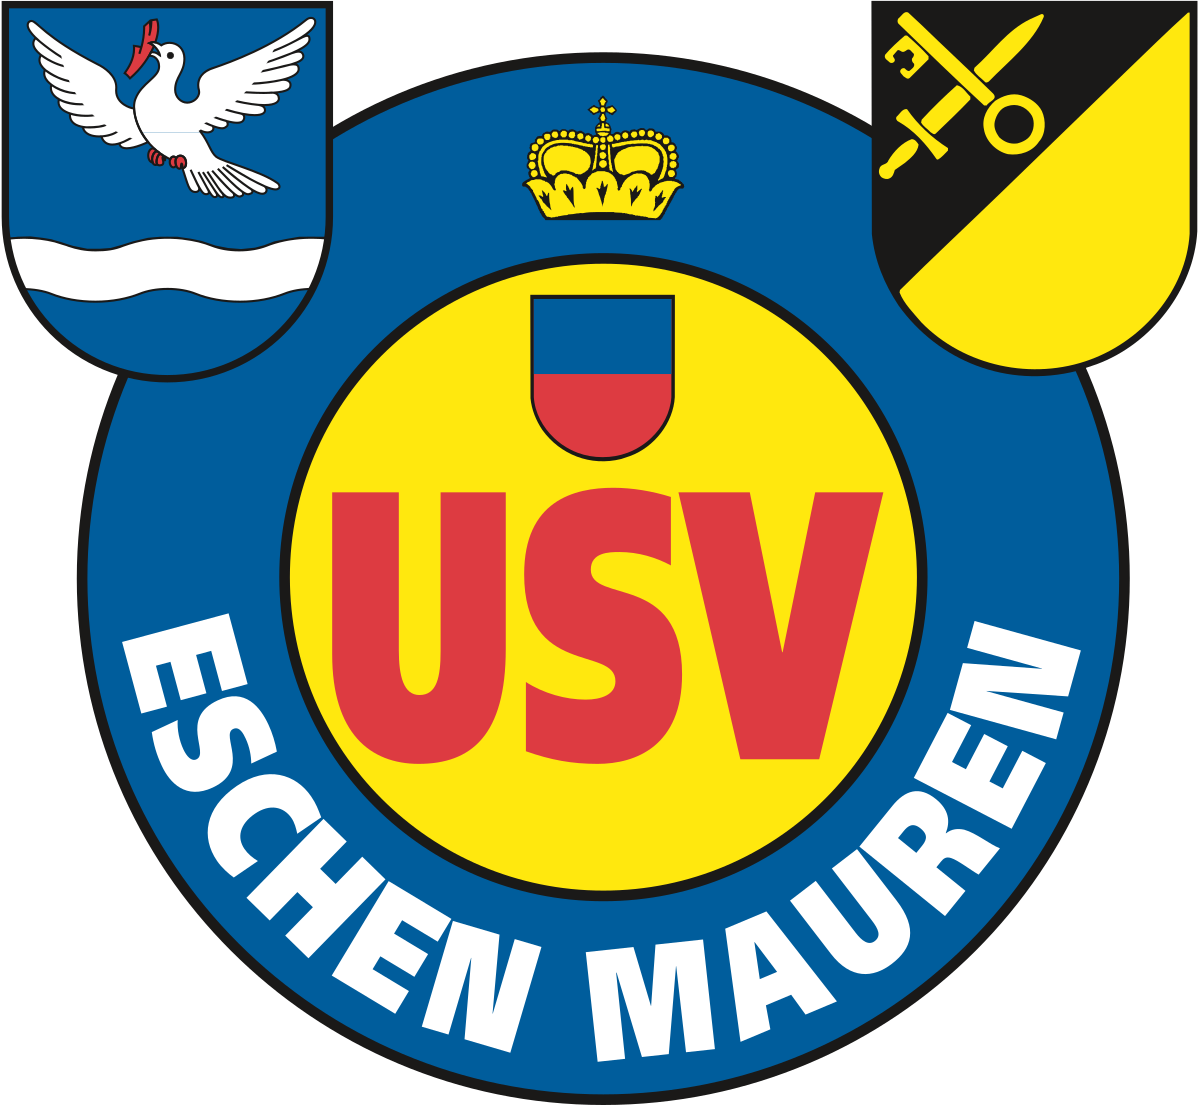 Eschen-Mauren logo